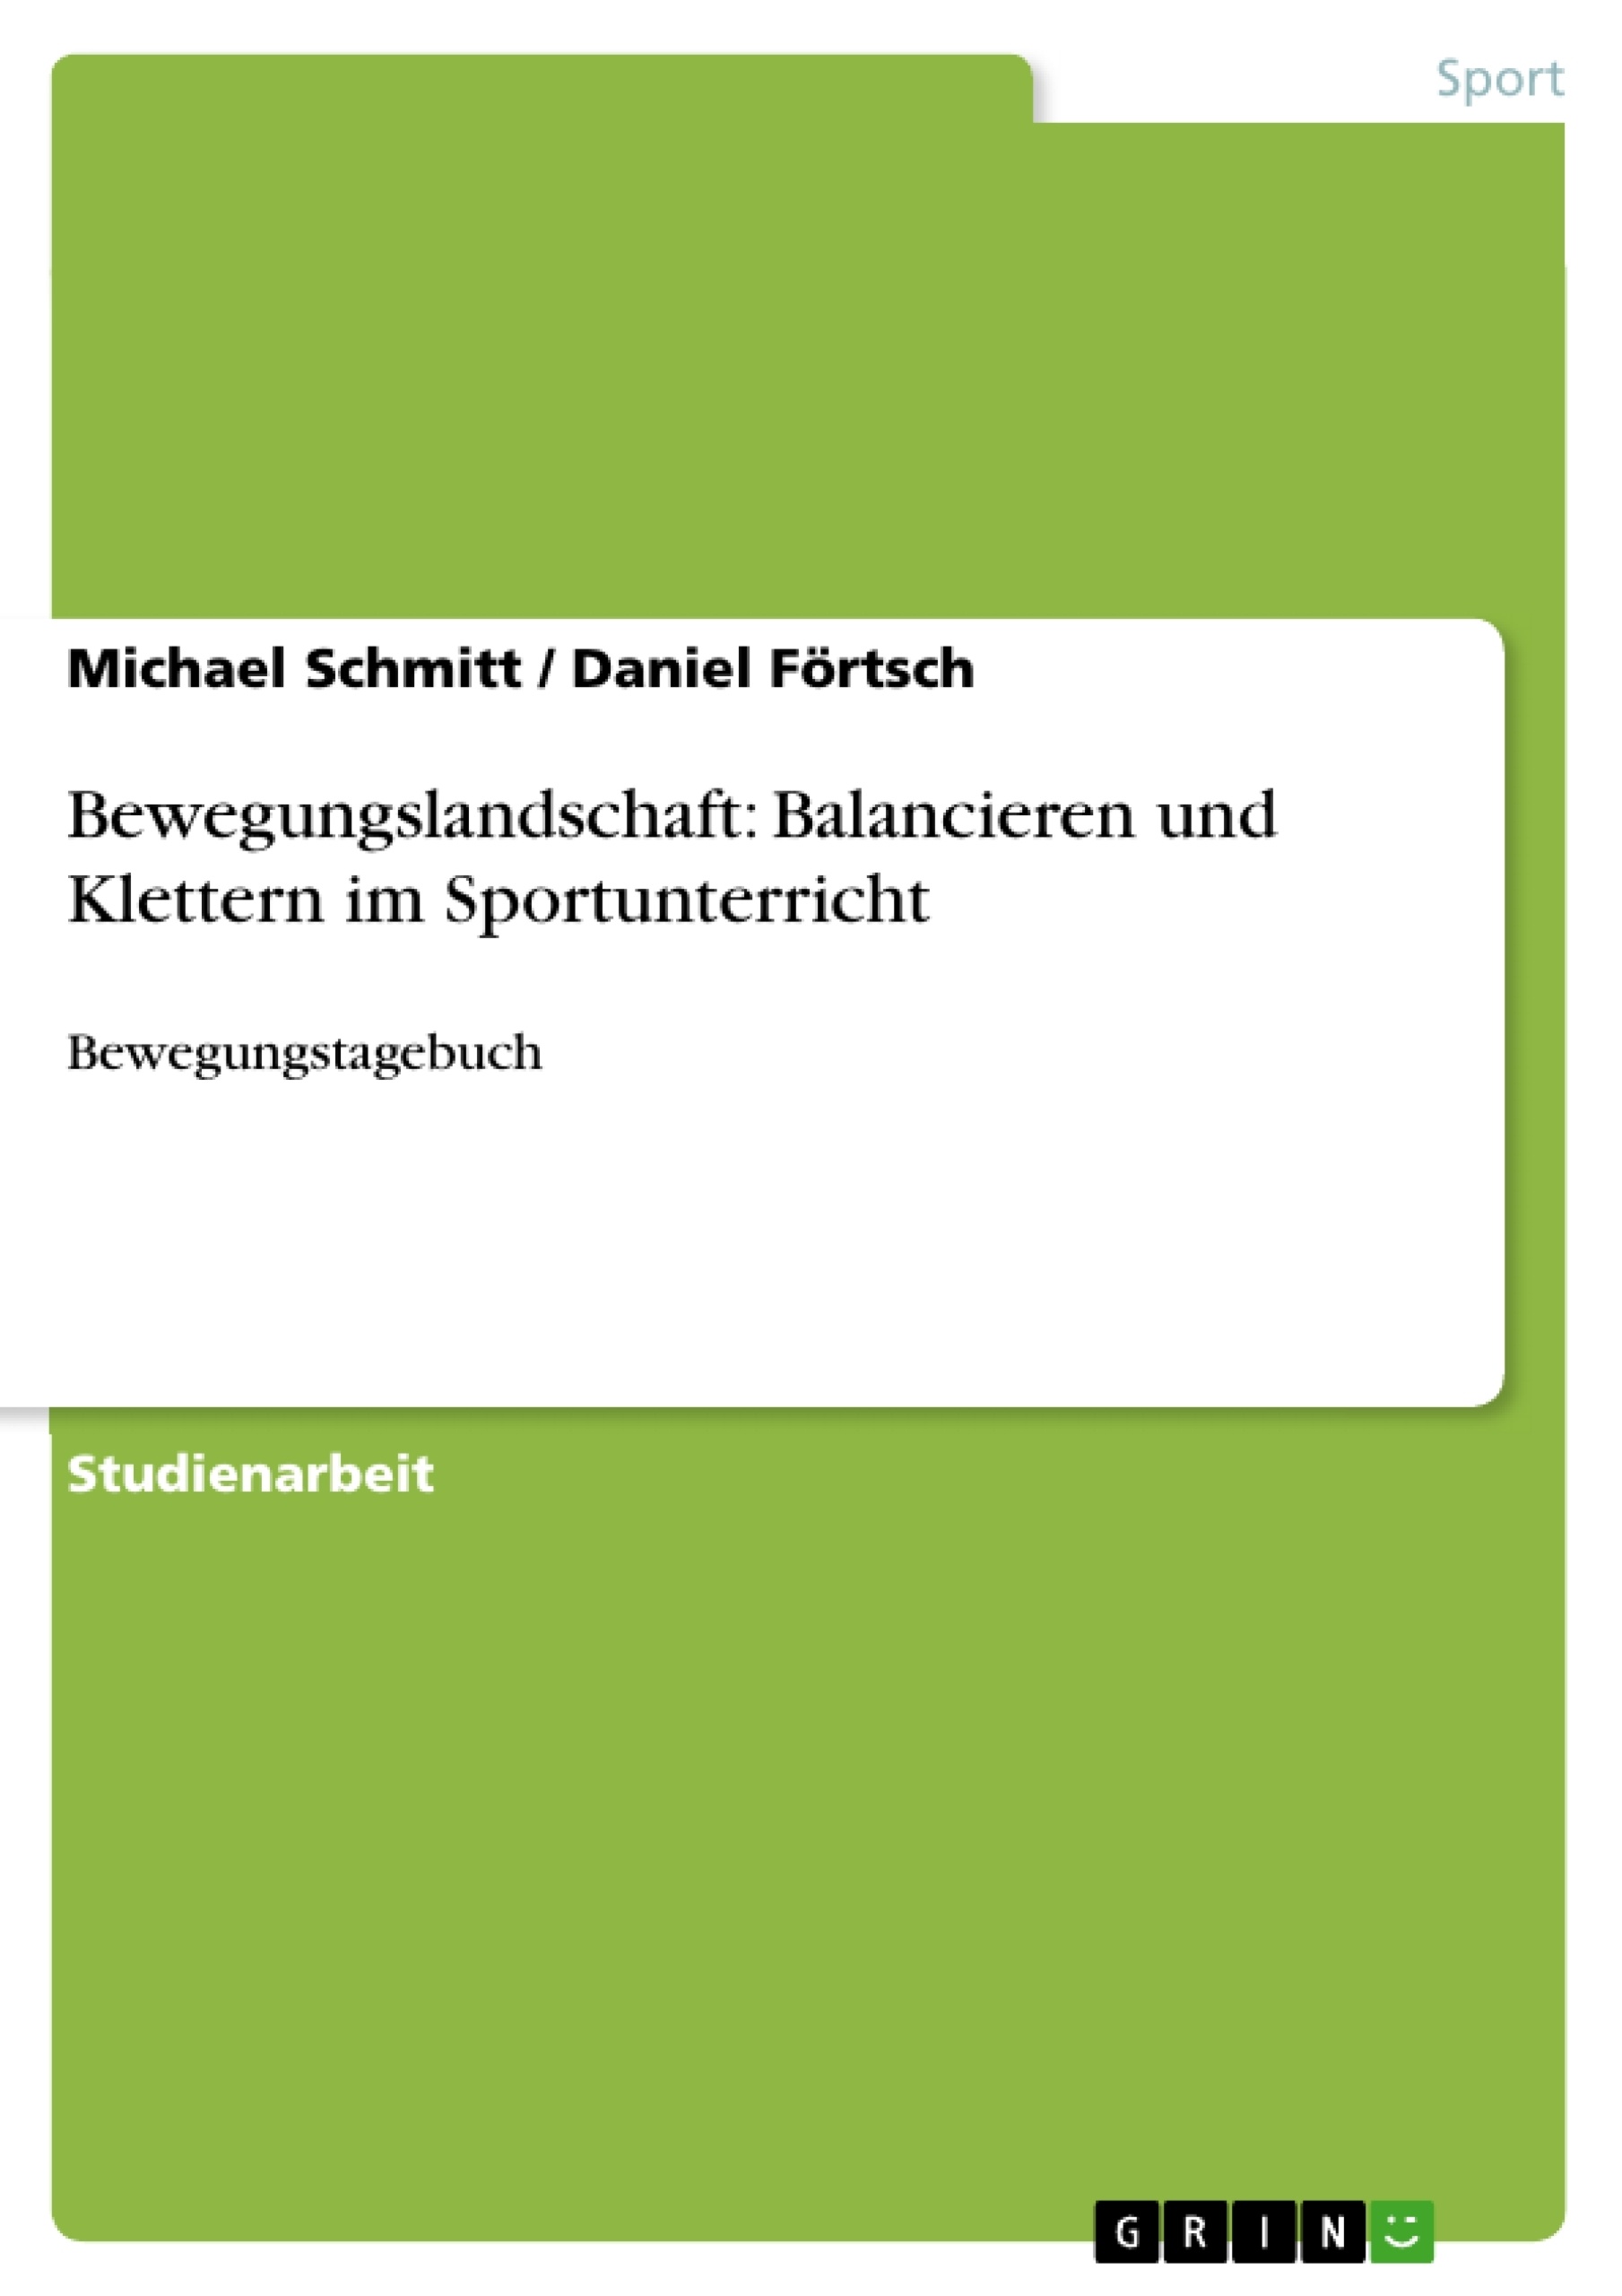 Title: Bewegungslandschaft: Balancieren und Klettern im Sportunterricht